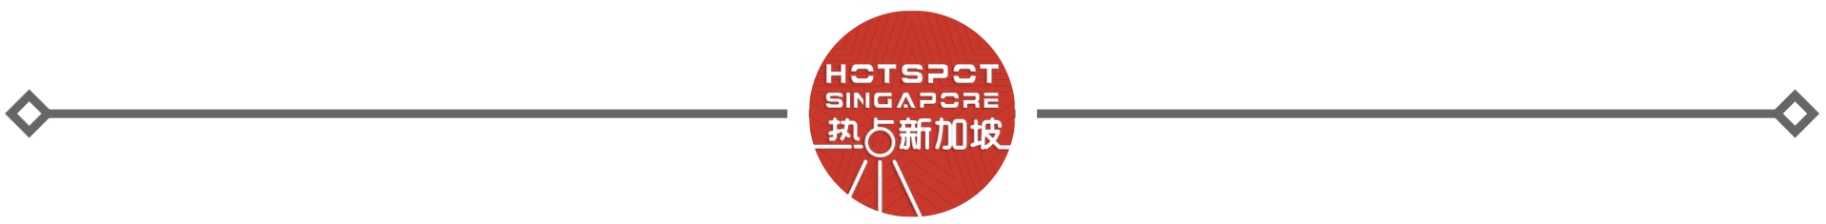 新加坡反对党选区账目不清遭质疑有两套标准-热点新加坡